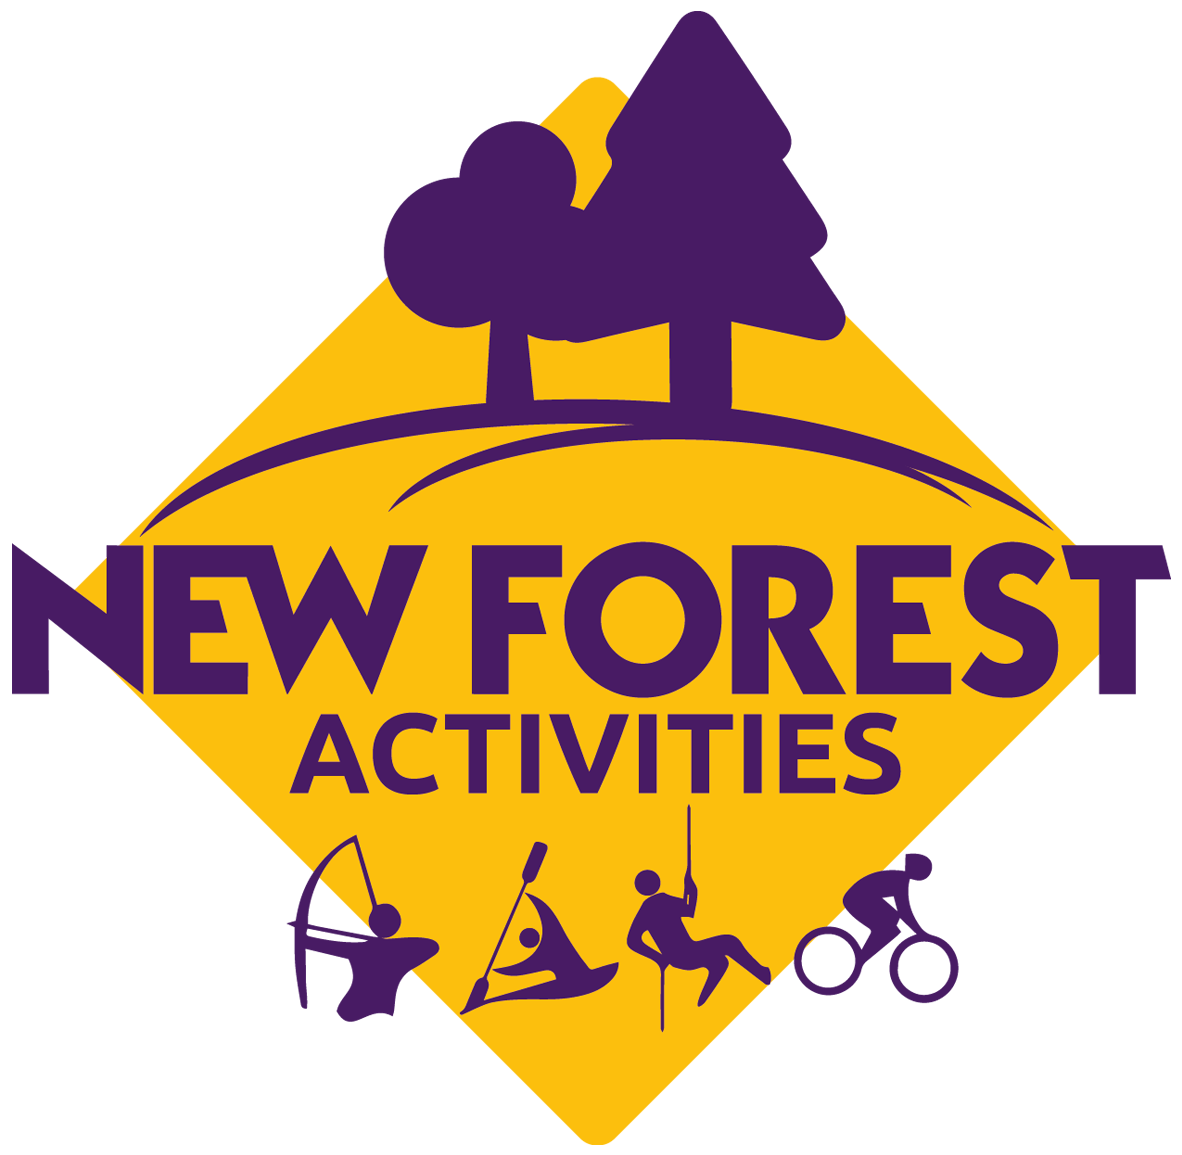 New Forest Activities - New Forest Activities (1250x1223)